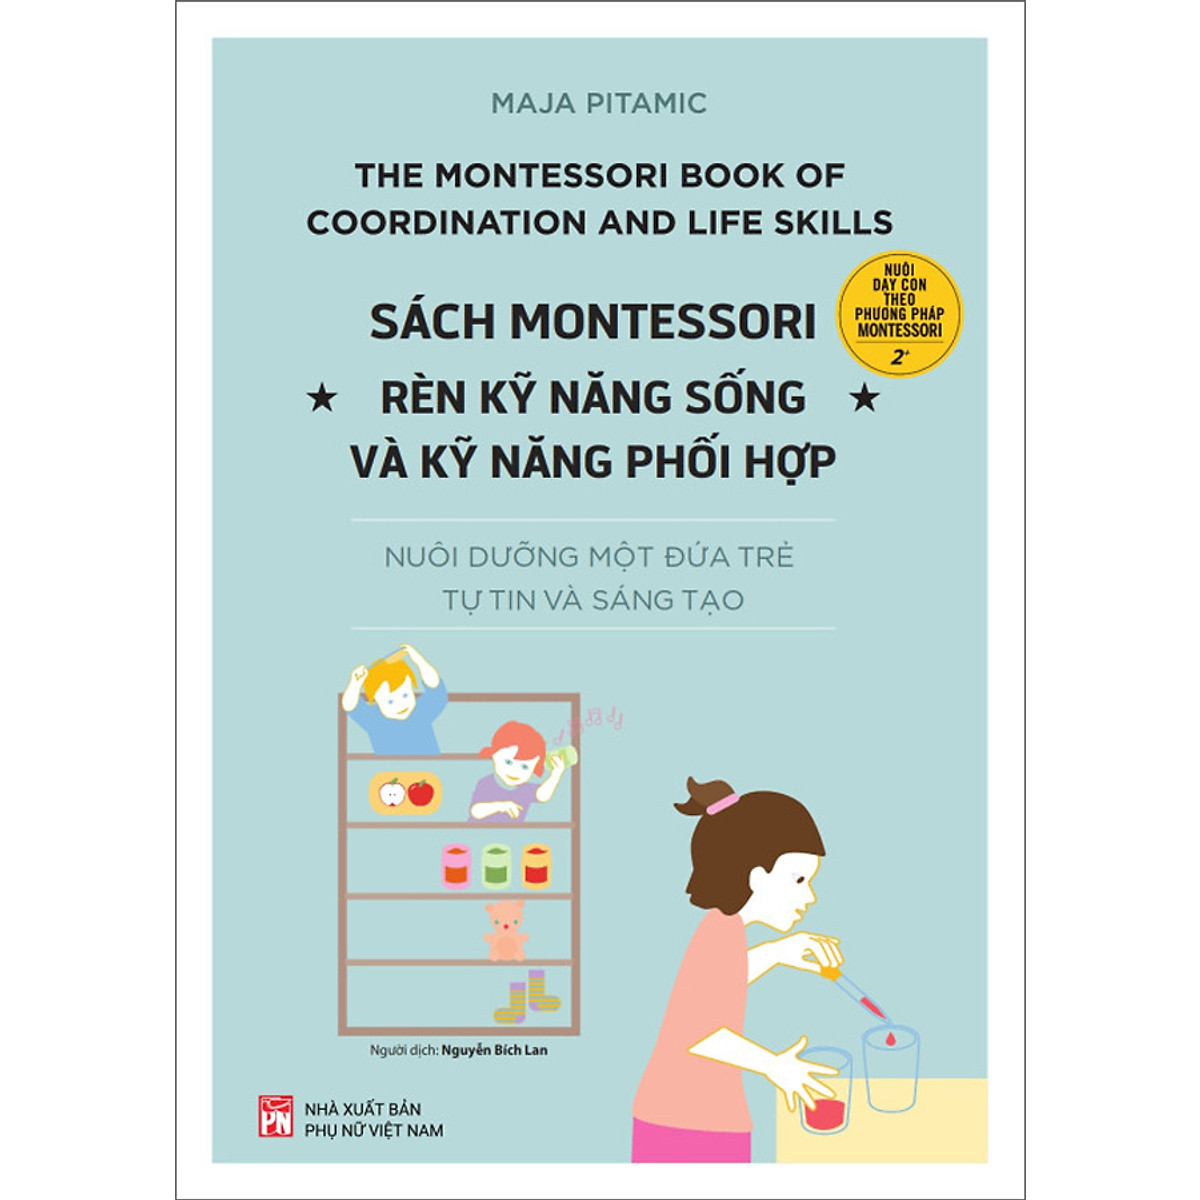 Sách Montessori để Thực hành Kỹ năng Sống và Phối hợp